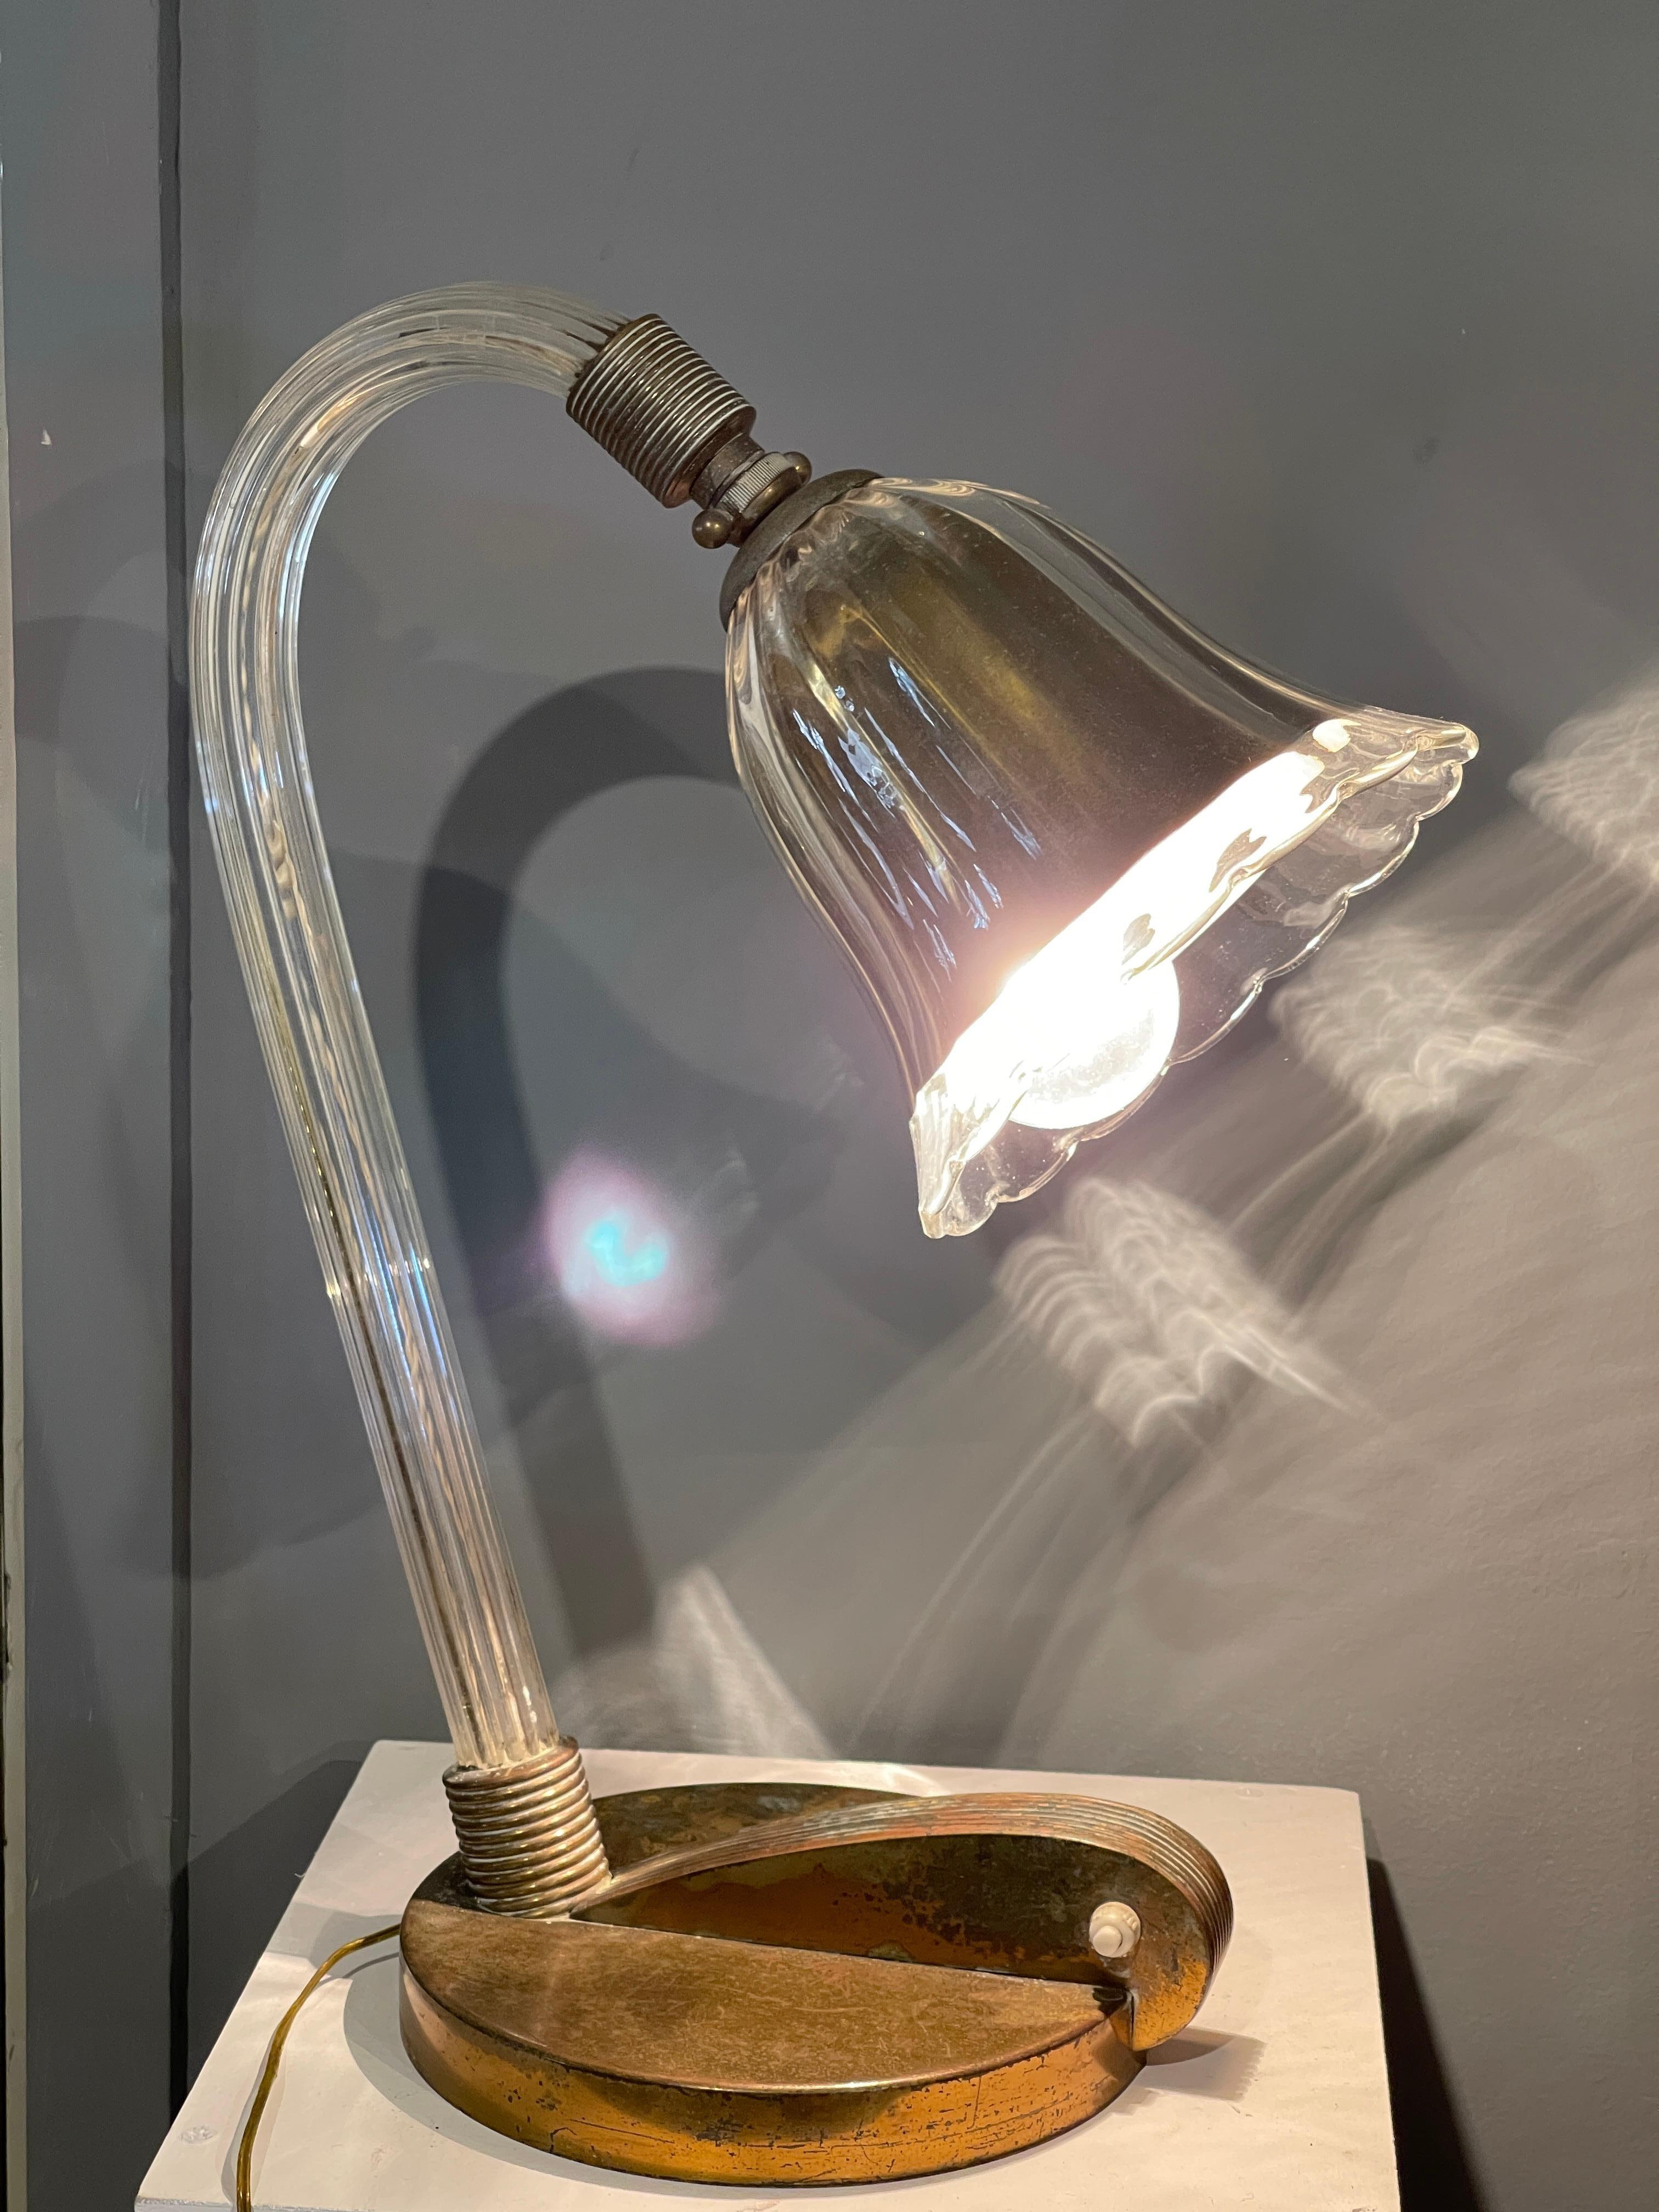 Tischlampe aus Muranoglas und Messing, hergestellt von der Firma Barovier im Jahr 1933, die den Deco-Stil der damaligen Zeit widerspiegelt.